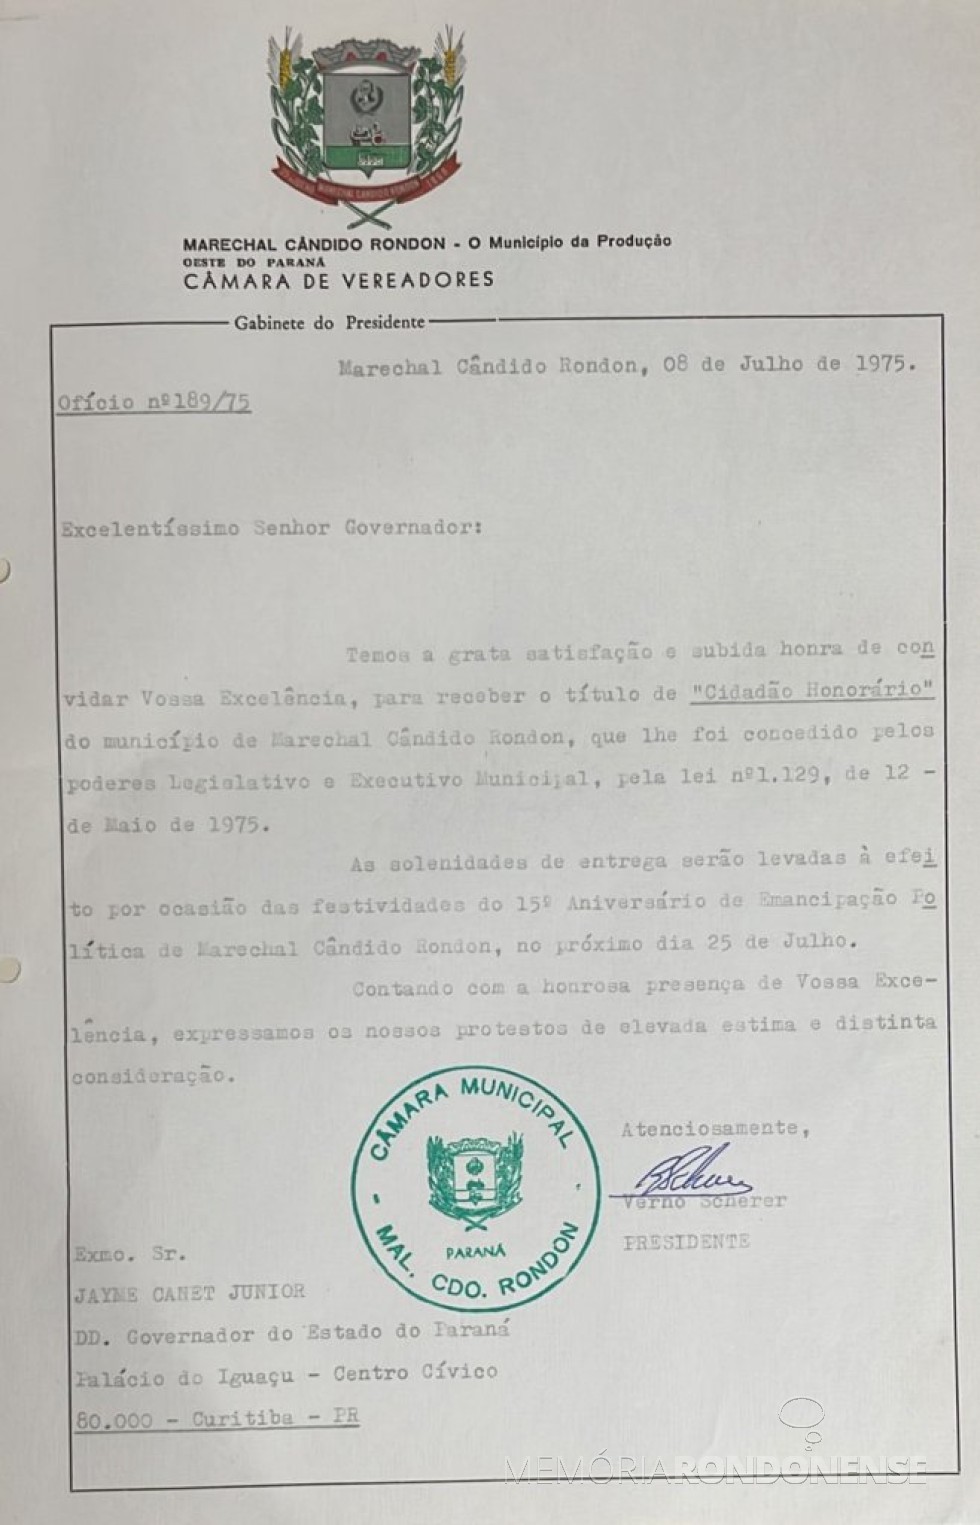 || Cópia do convite formulado pela Câmara de Vereadores de Marechal Cândido Rondon ao governador Jayme Canet Junior para receber o título de Cidadão Honorário, em julho de 1975 .
Imagem: Acervo Edilidade citada - FOTO 4 - 